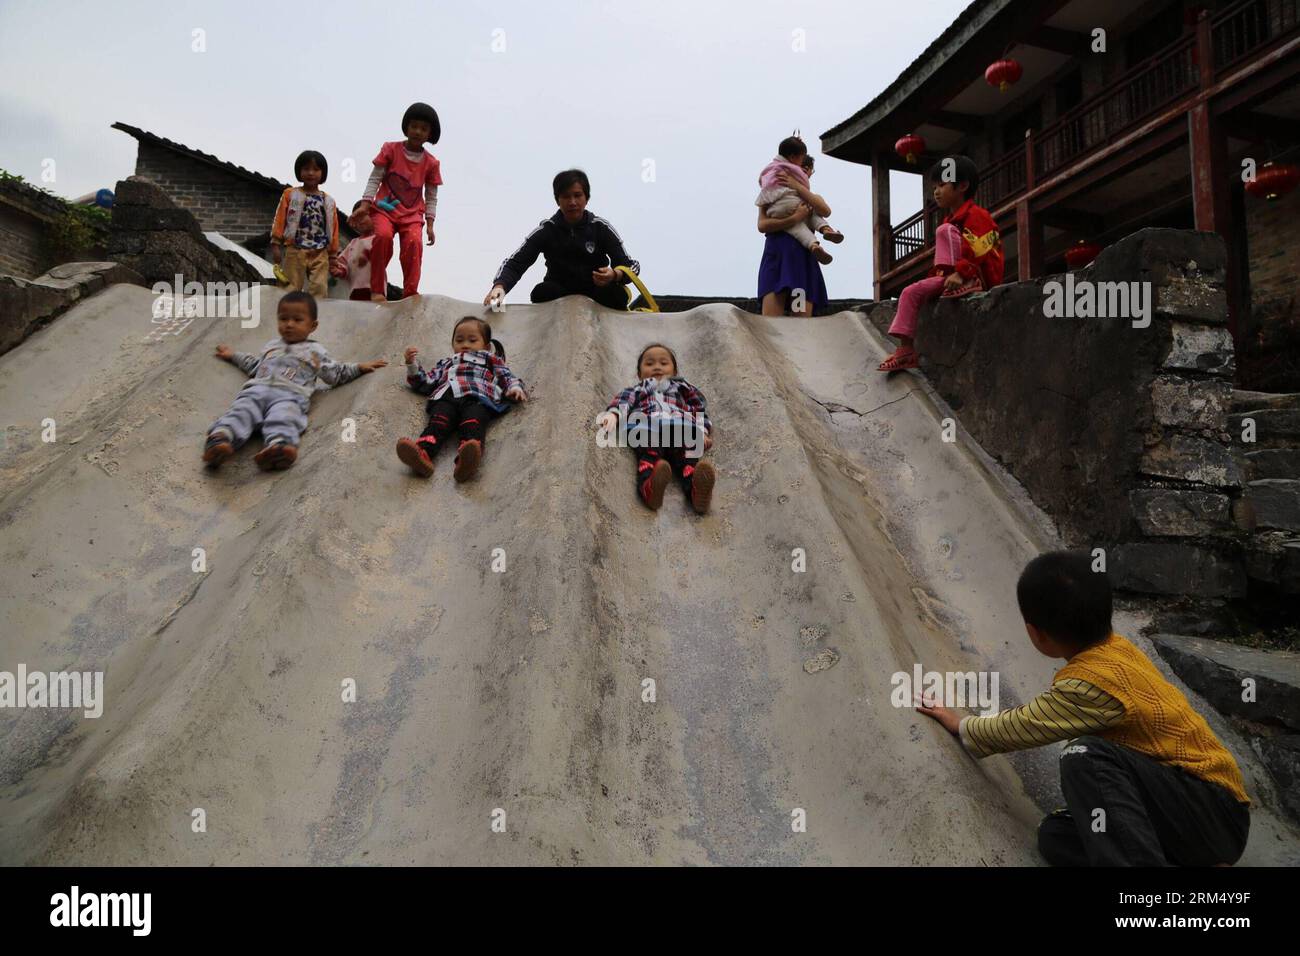 Bildnummer : 60534645 Datum : 26.09.2013 Copyright : imago/Xinhua (130927) -- ZHAOPING, 26 septembre 2013 (Xinhua) -- des enfants jouent sur un toboggan dans l'ancienne ville de Huangyao dans le comté de Zhaoping, dans la région autonome de Guangxi Zhuang, dans le sud de la Chine, 26 septembre 2013. Couvrant une superficie de quelque 3,6 kilomètres carrés, la ville a une histoire de près de mille ans. (Xinhua/Xiong Suling) (wqq) CHINA-GUANGXI-ZHAOPING-ANCIENT TOWN (CN) PUBLICATIONxNOTxINxCHN Gesellschaft Kultur China xdp x0x 2013 quer 60534645 Date 26 09 2013 Copyright Imago XINHUA Zhao Ping sept 26 2013 enfants XINHUA jouer SUR une diapositive Banque D'Images